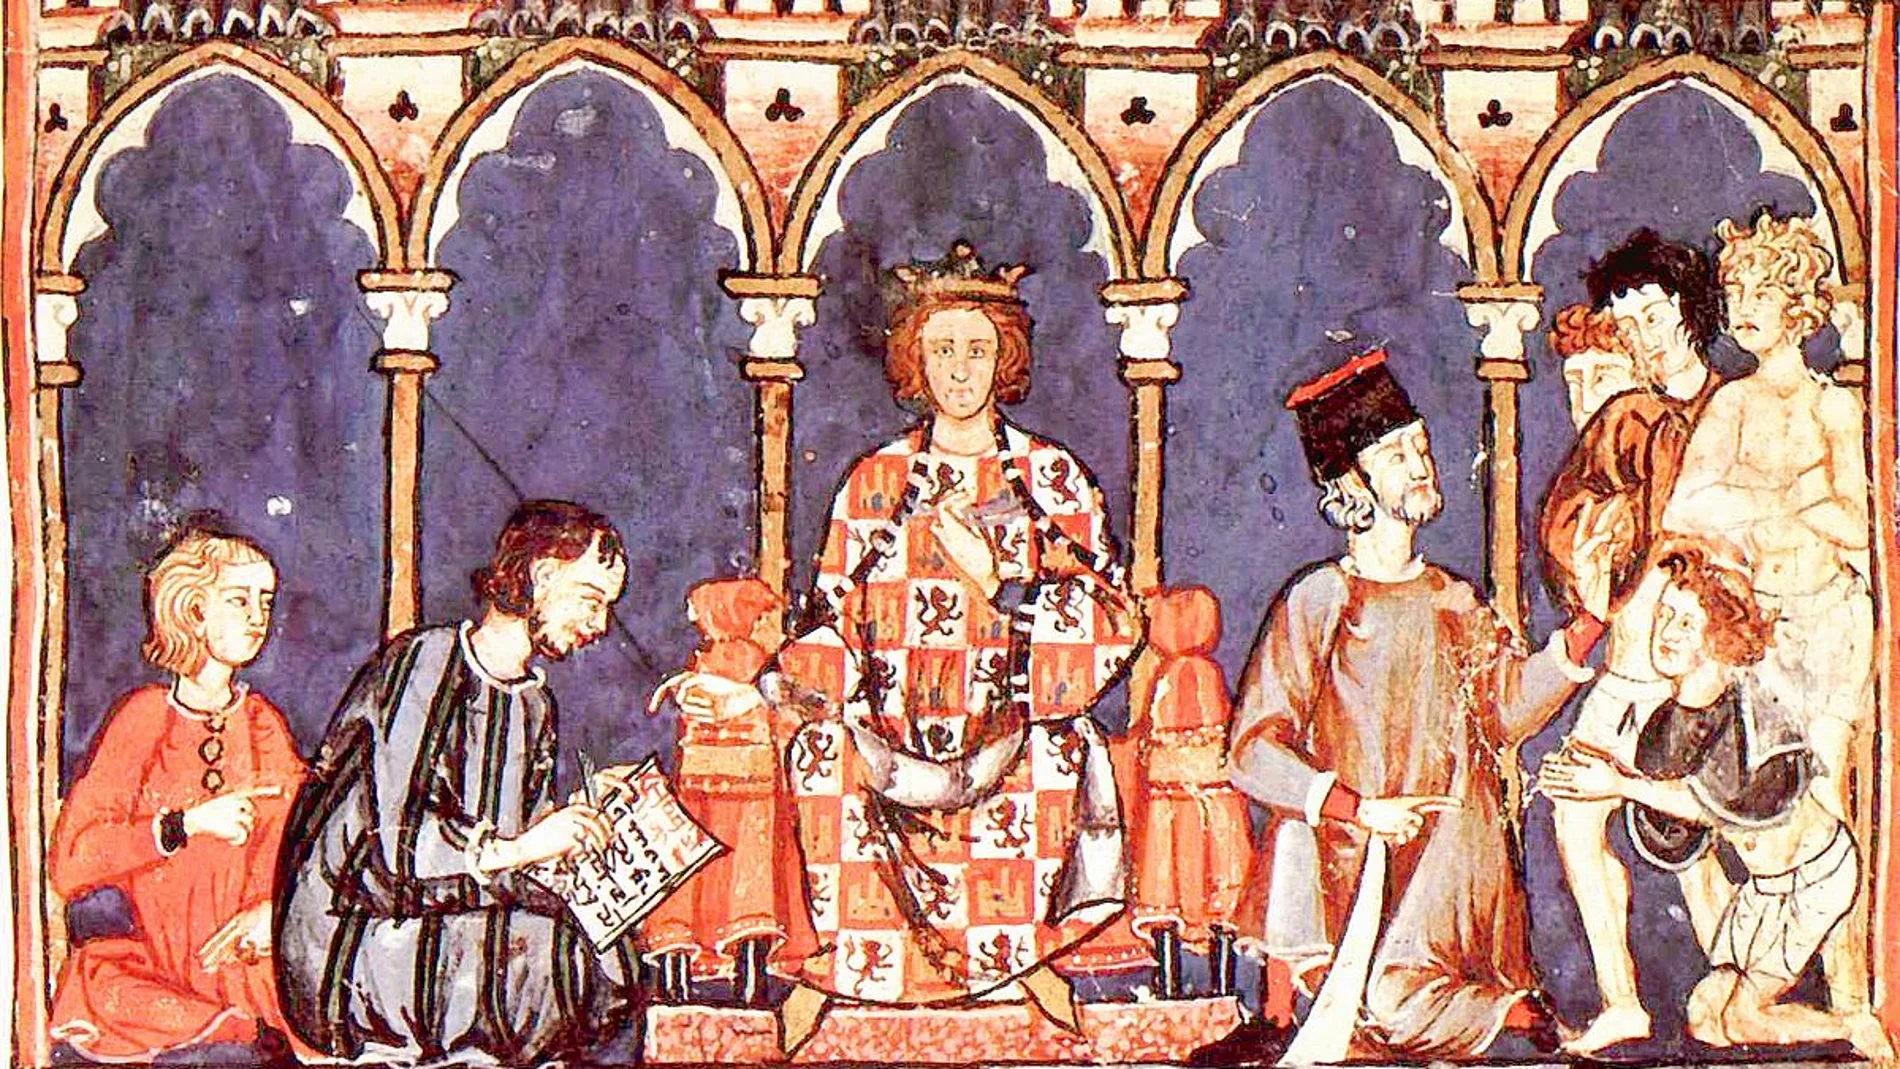 Alfonso X junto a su corte en una ilustración medieval perteneciente al "Libro de los juegos"